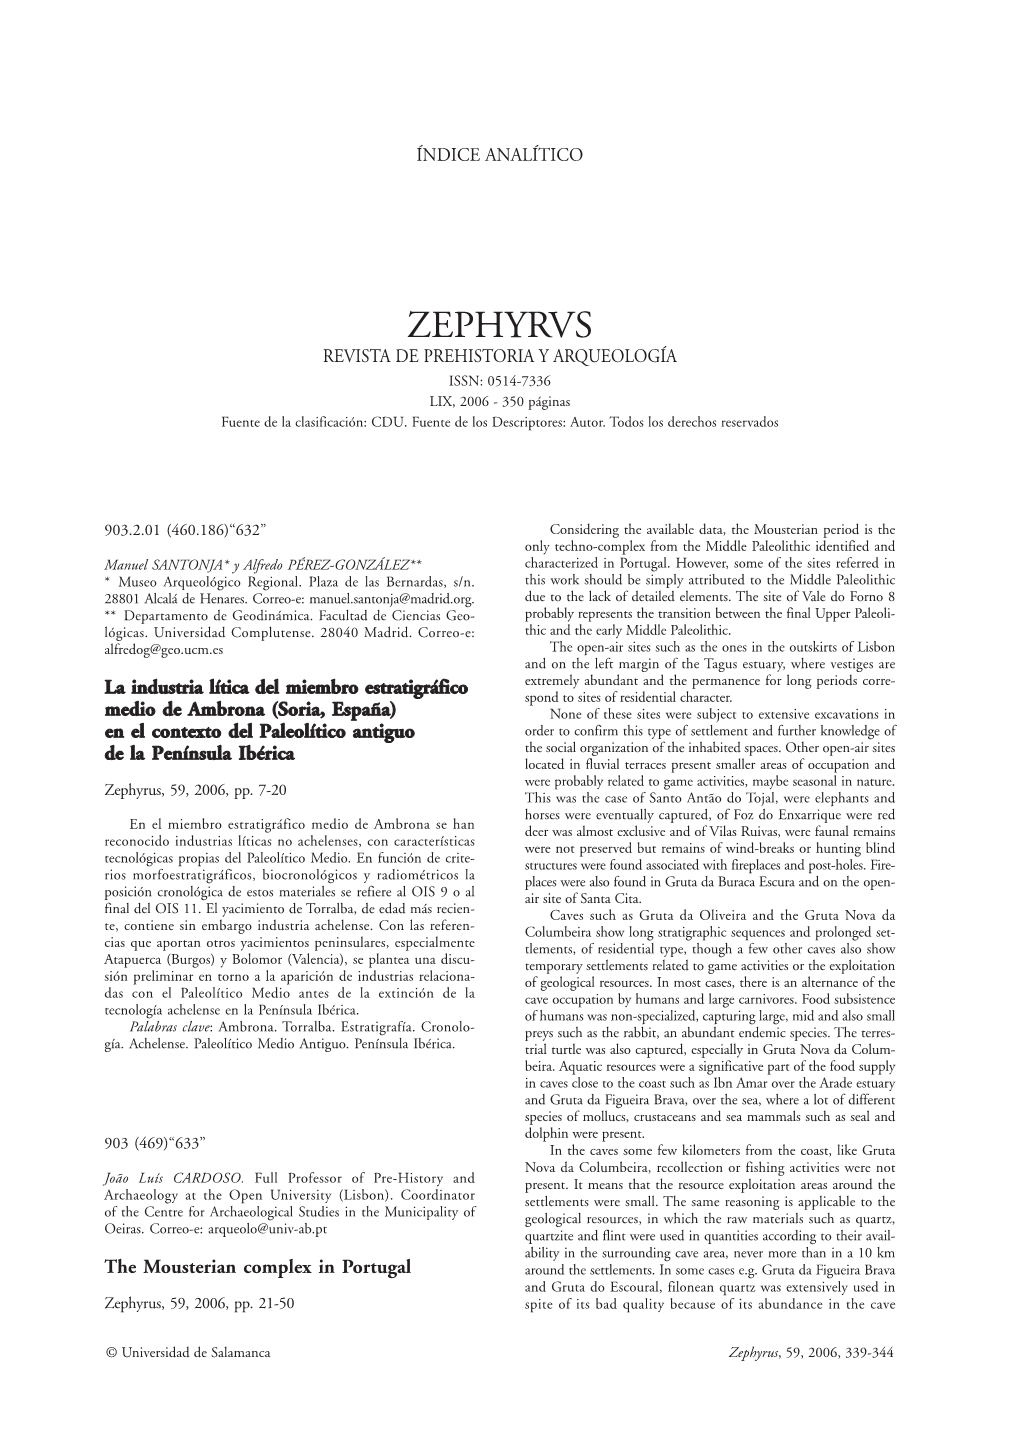 00-1 Zephyrvs 59 2006